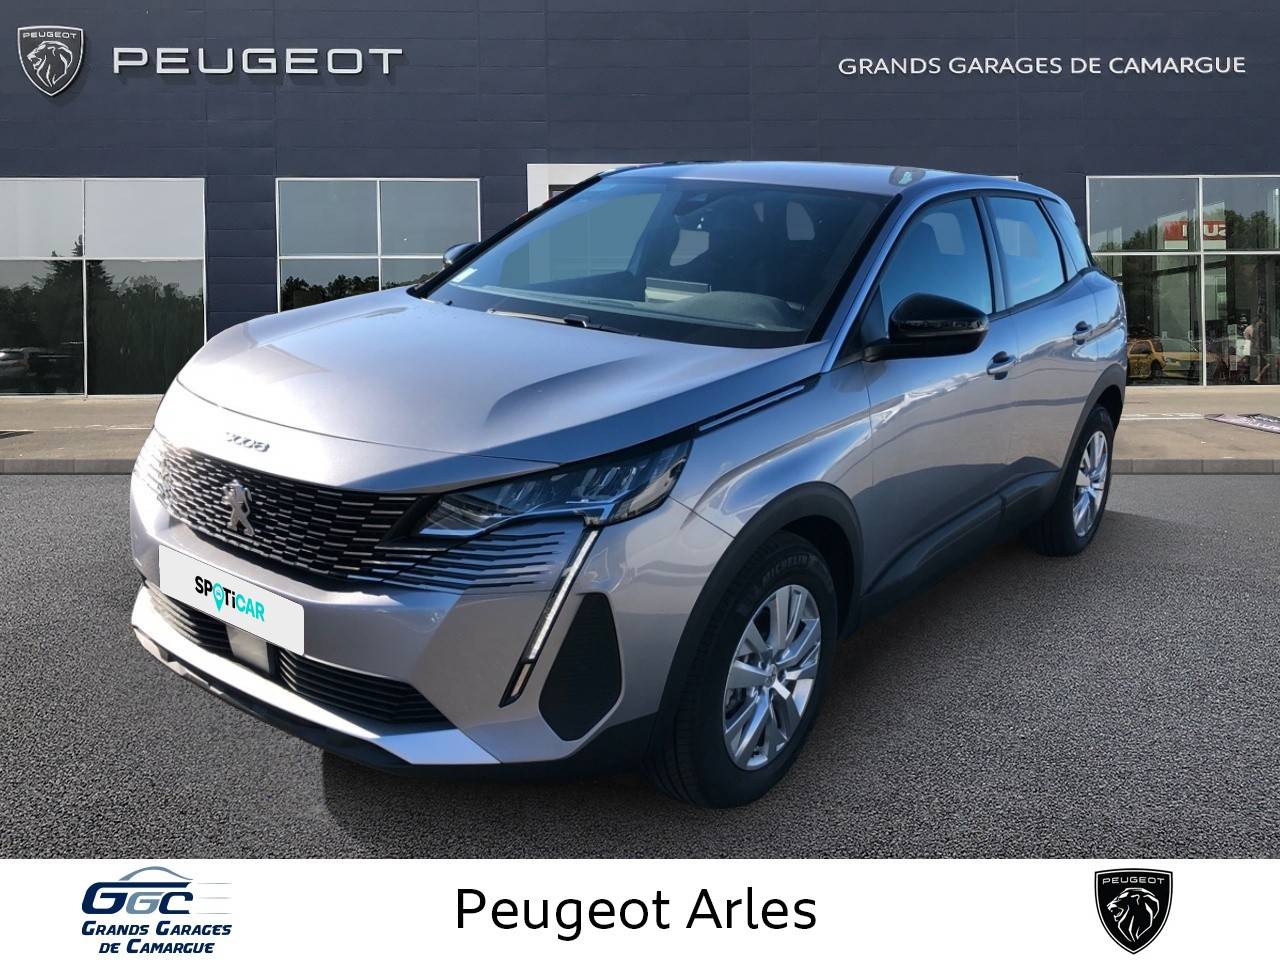 PEUGEOT 3008 | 3008 PureTech 130ch S&S EAT8 occasion - Peugeot Arles